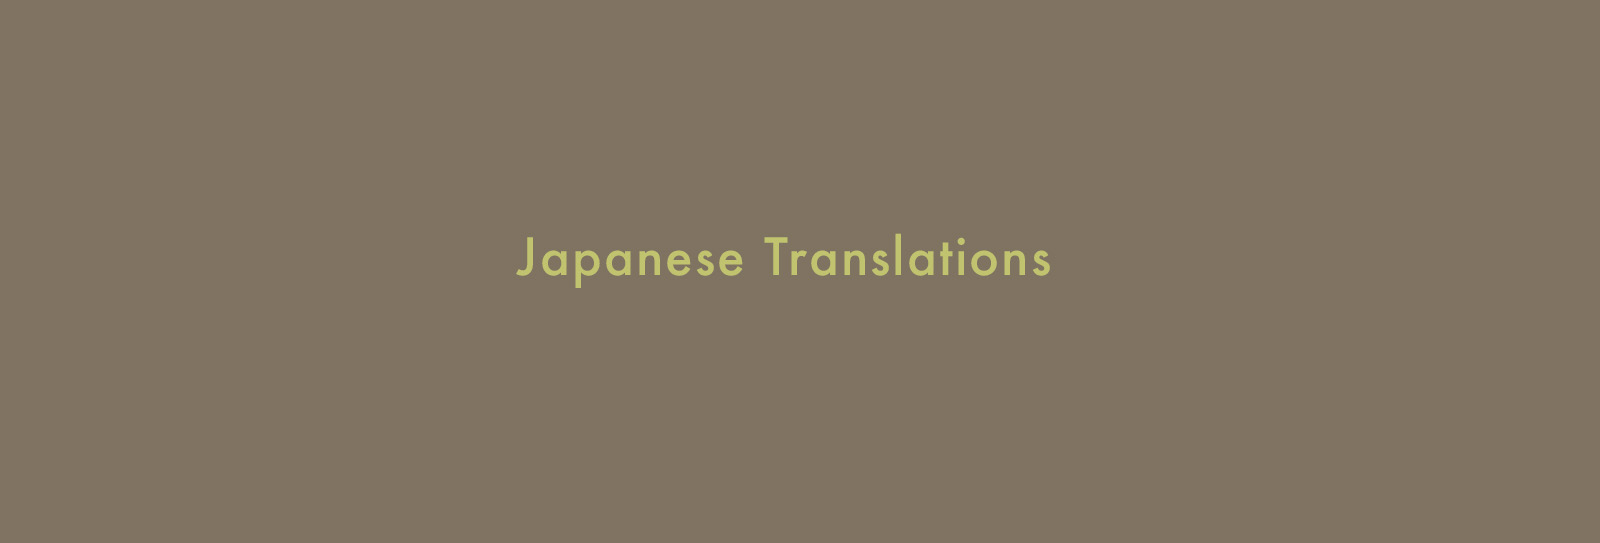 Japanese Translations